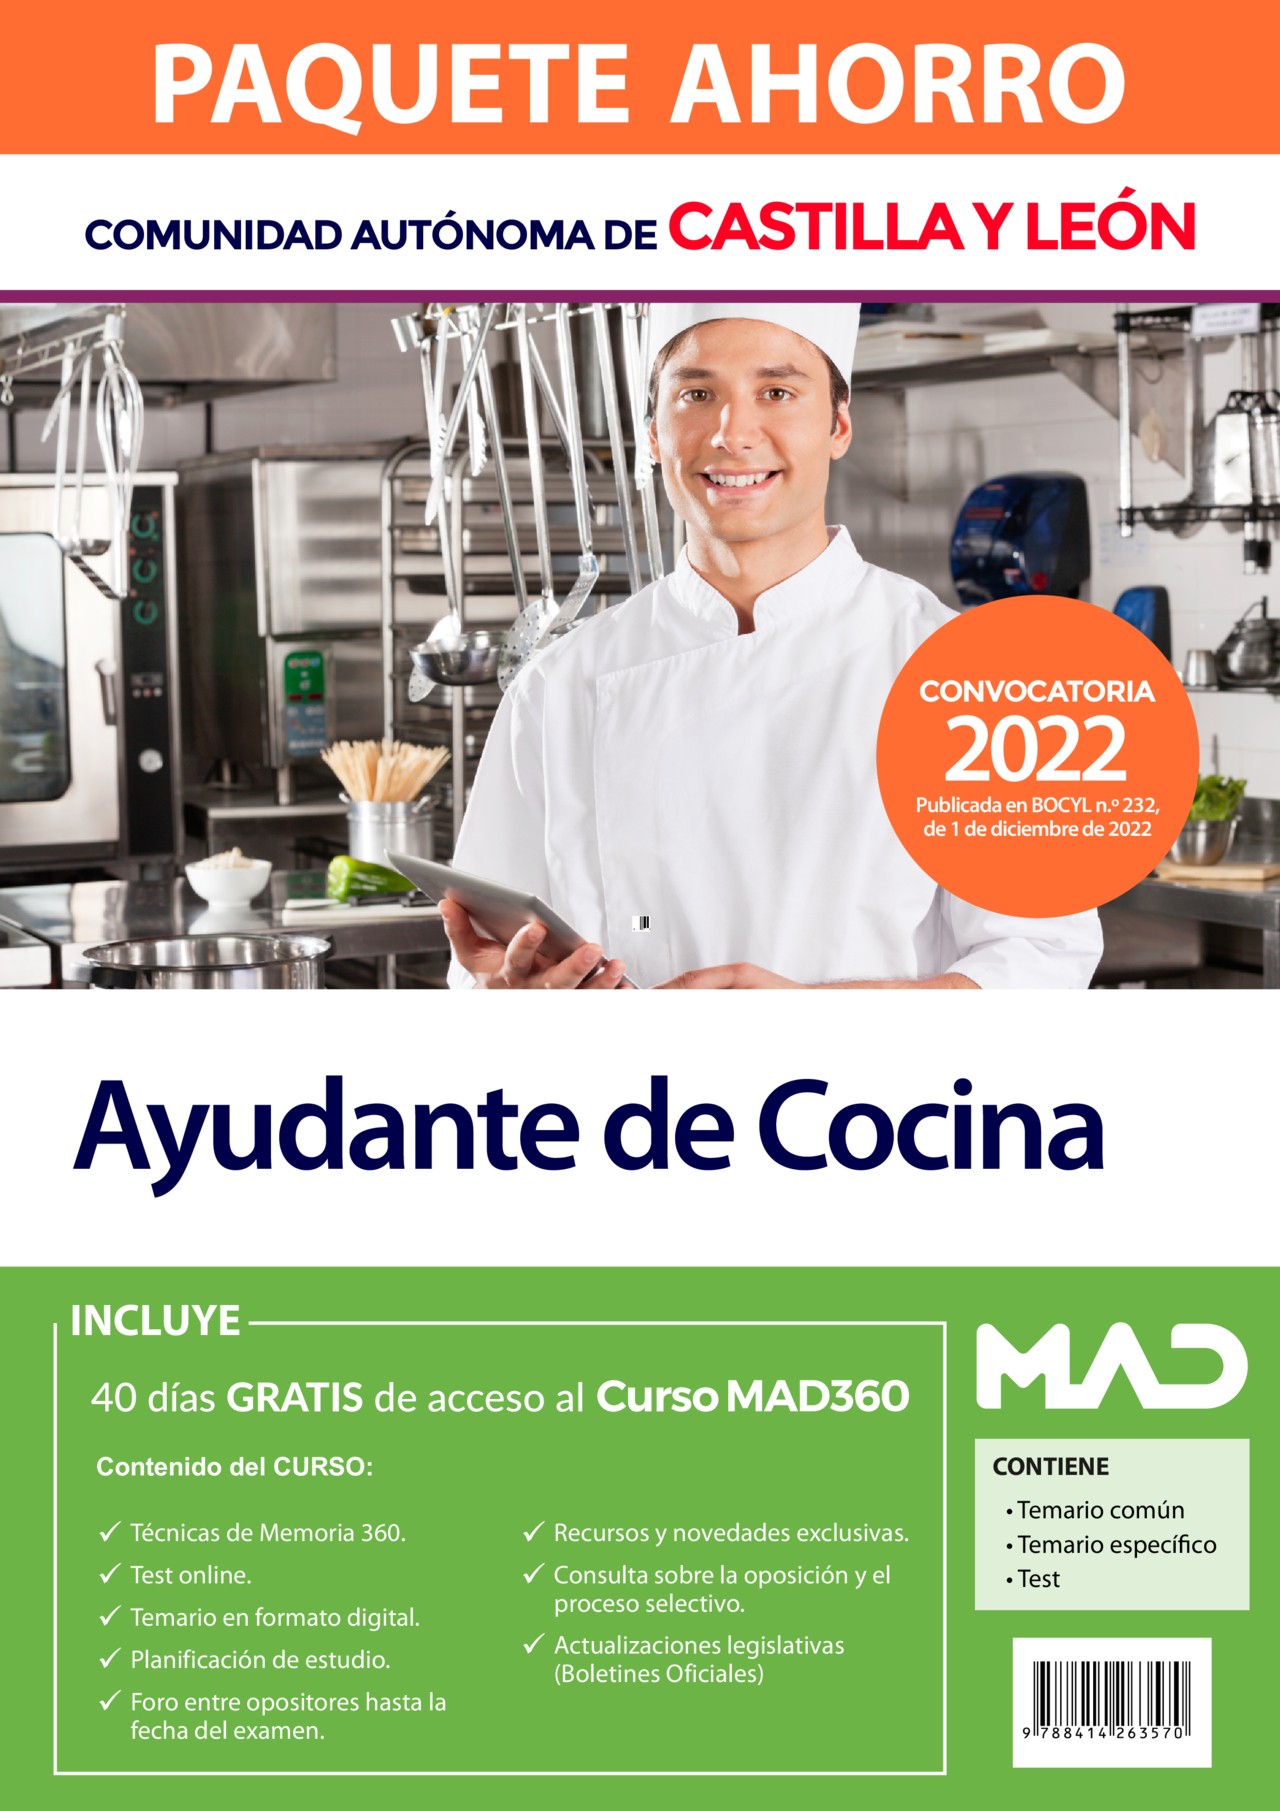 Paquete Ahorro Ayudante de Cocina. Castilla y León